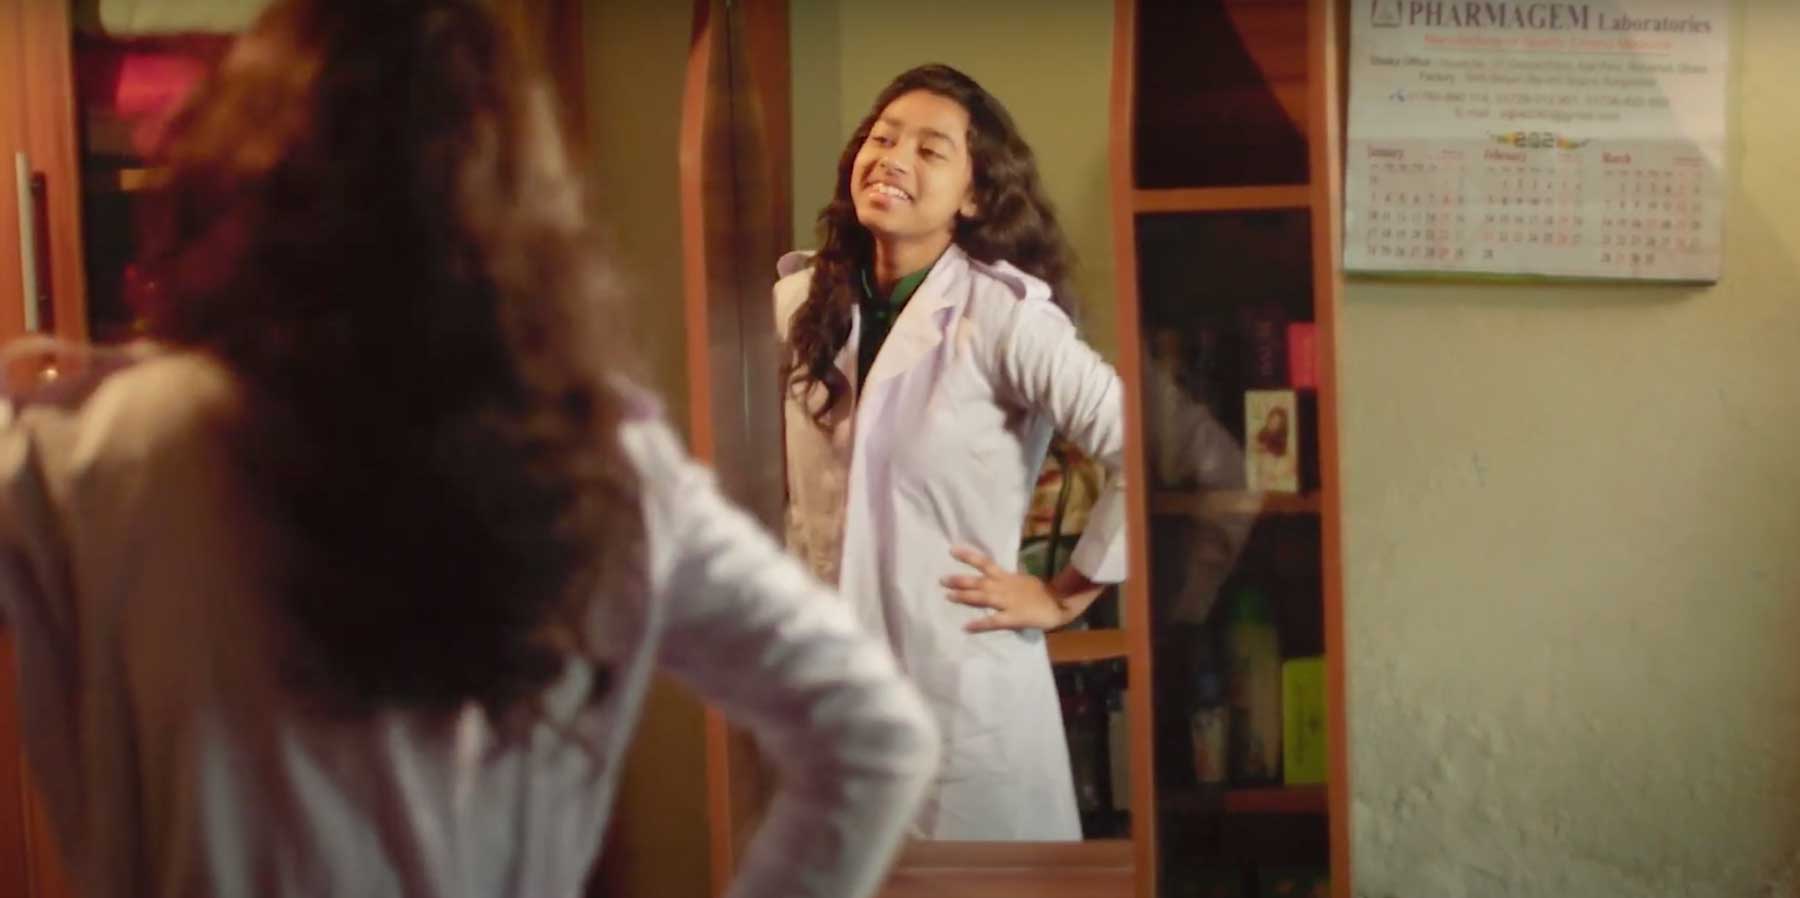 Une fille bangladaise sourit en posant devant un miroir.